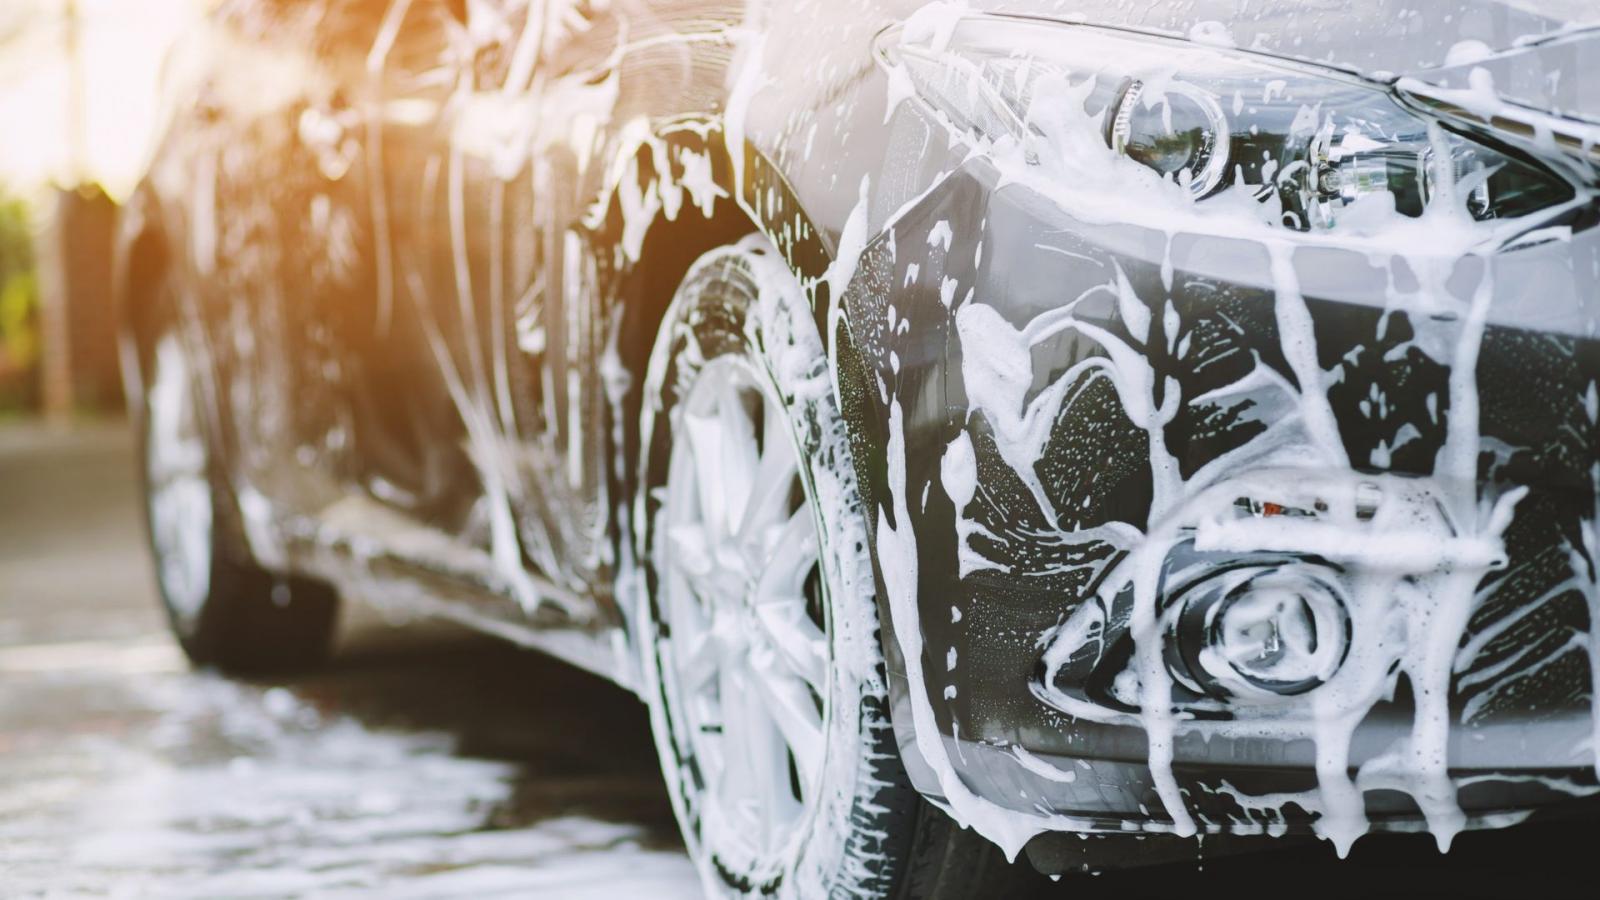 πώς πλένεις σωστά ένα αυτοκίνητο - οι συμβουλές του κορυφαίου επαγγελματία